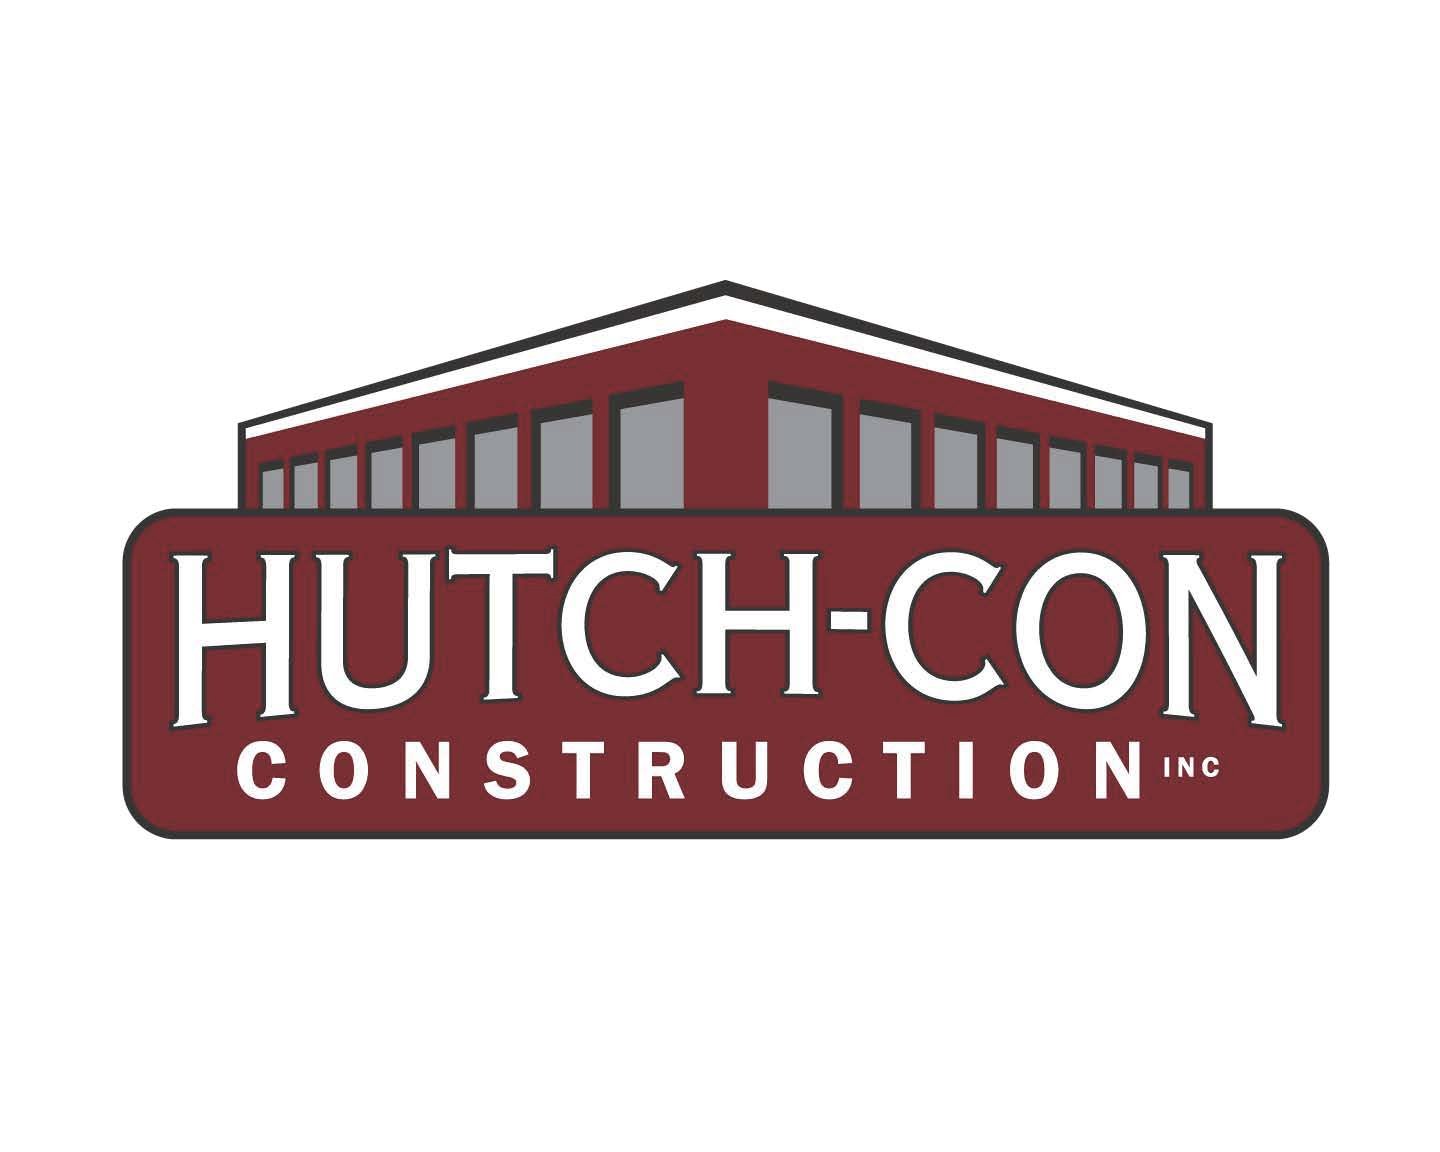 Hutch-Con Construction